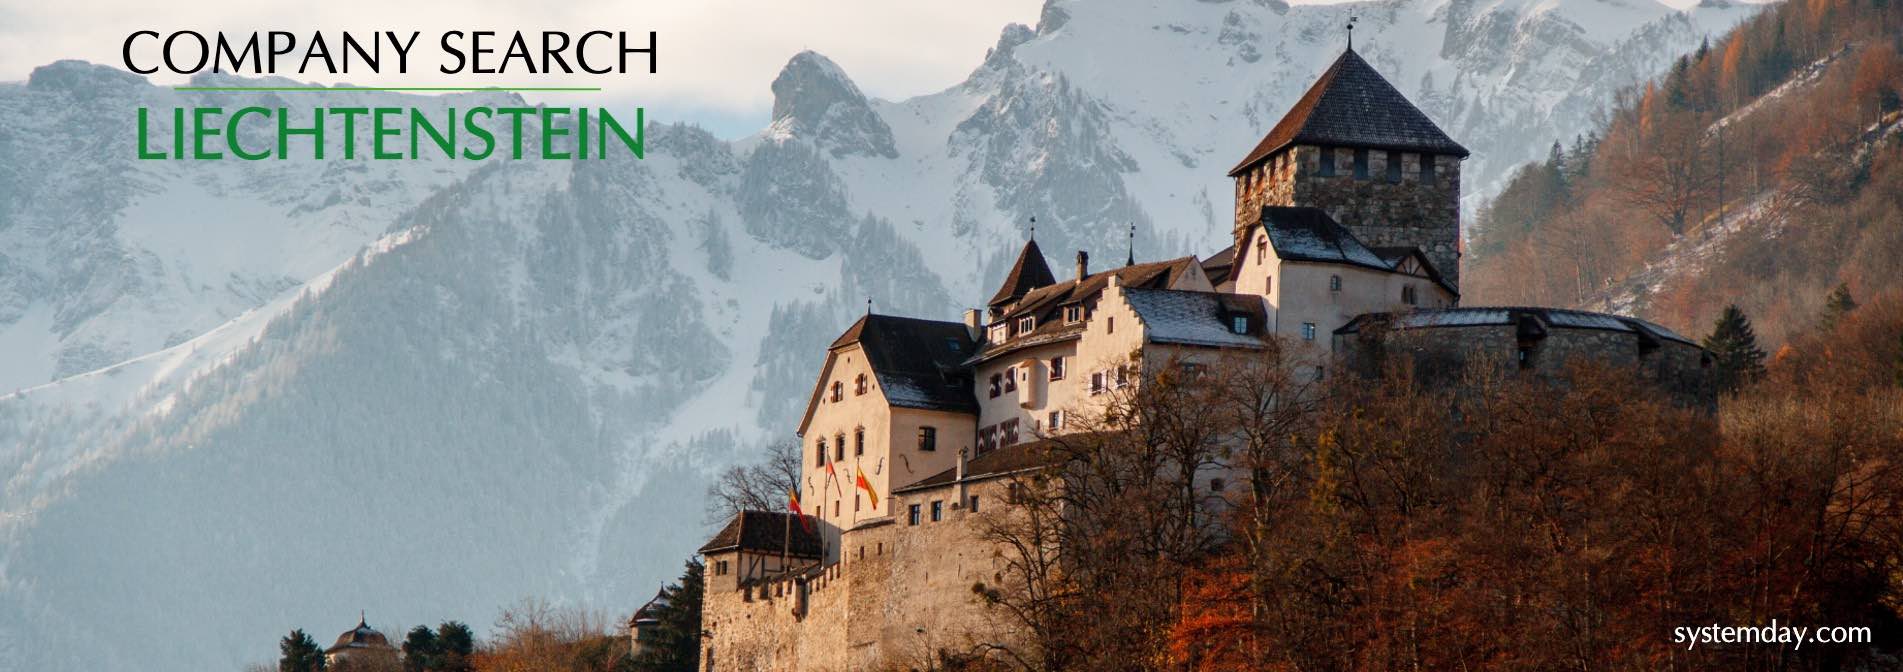 Liechtenstein Company Search